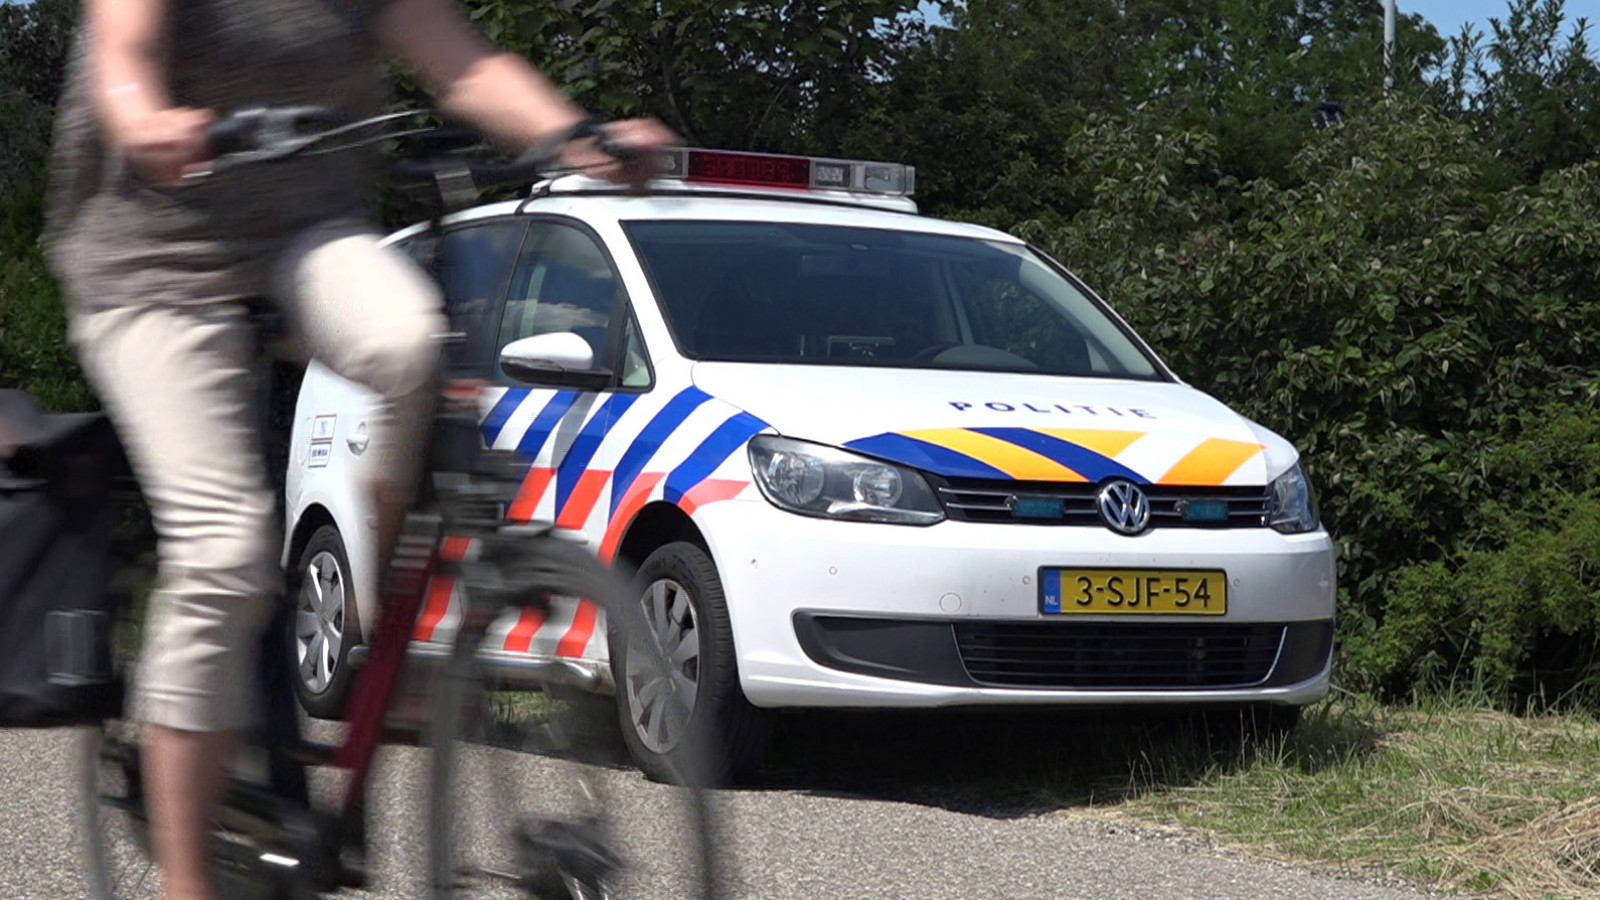 De politie onderzoekt de zaak van de brandbommen in Naarden